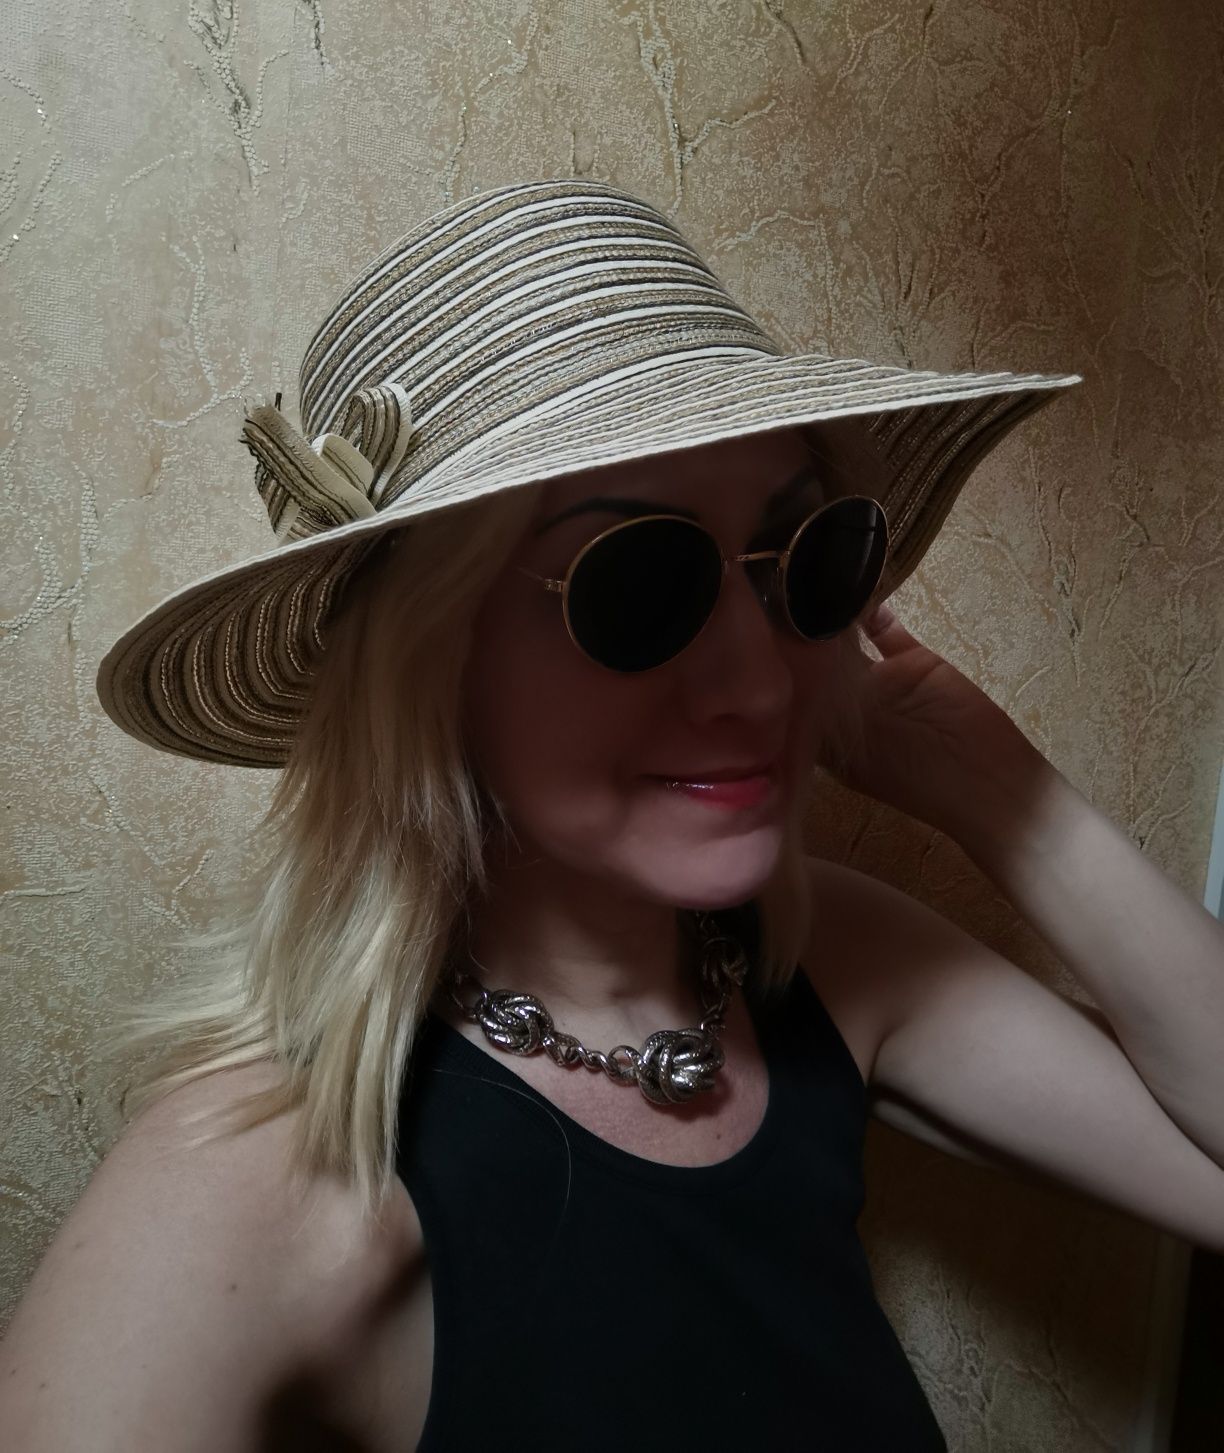 Соломенная шляпа с широкими полями широкополая женская шляпа